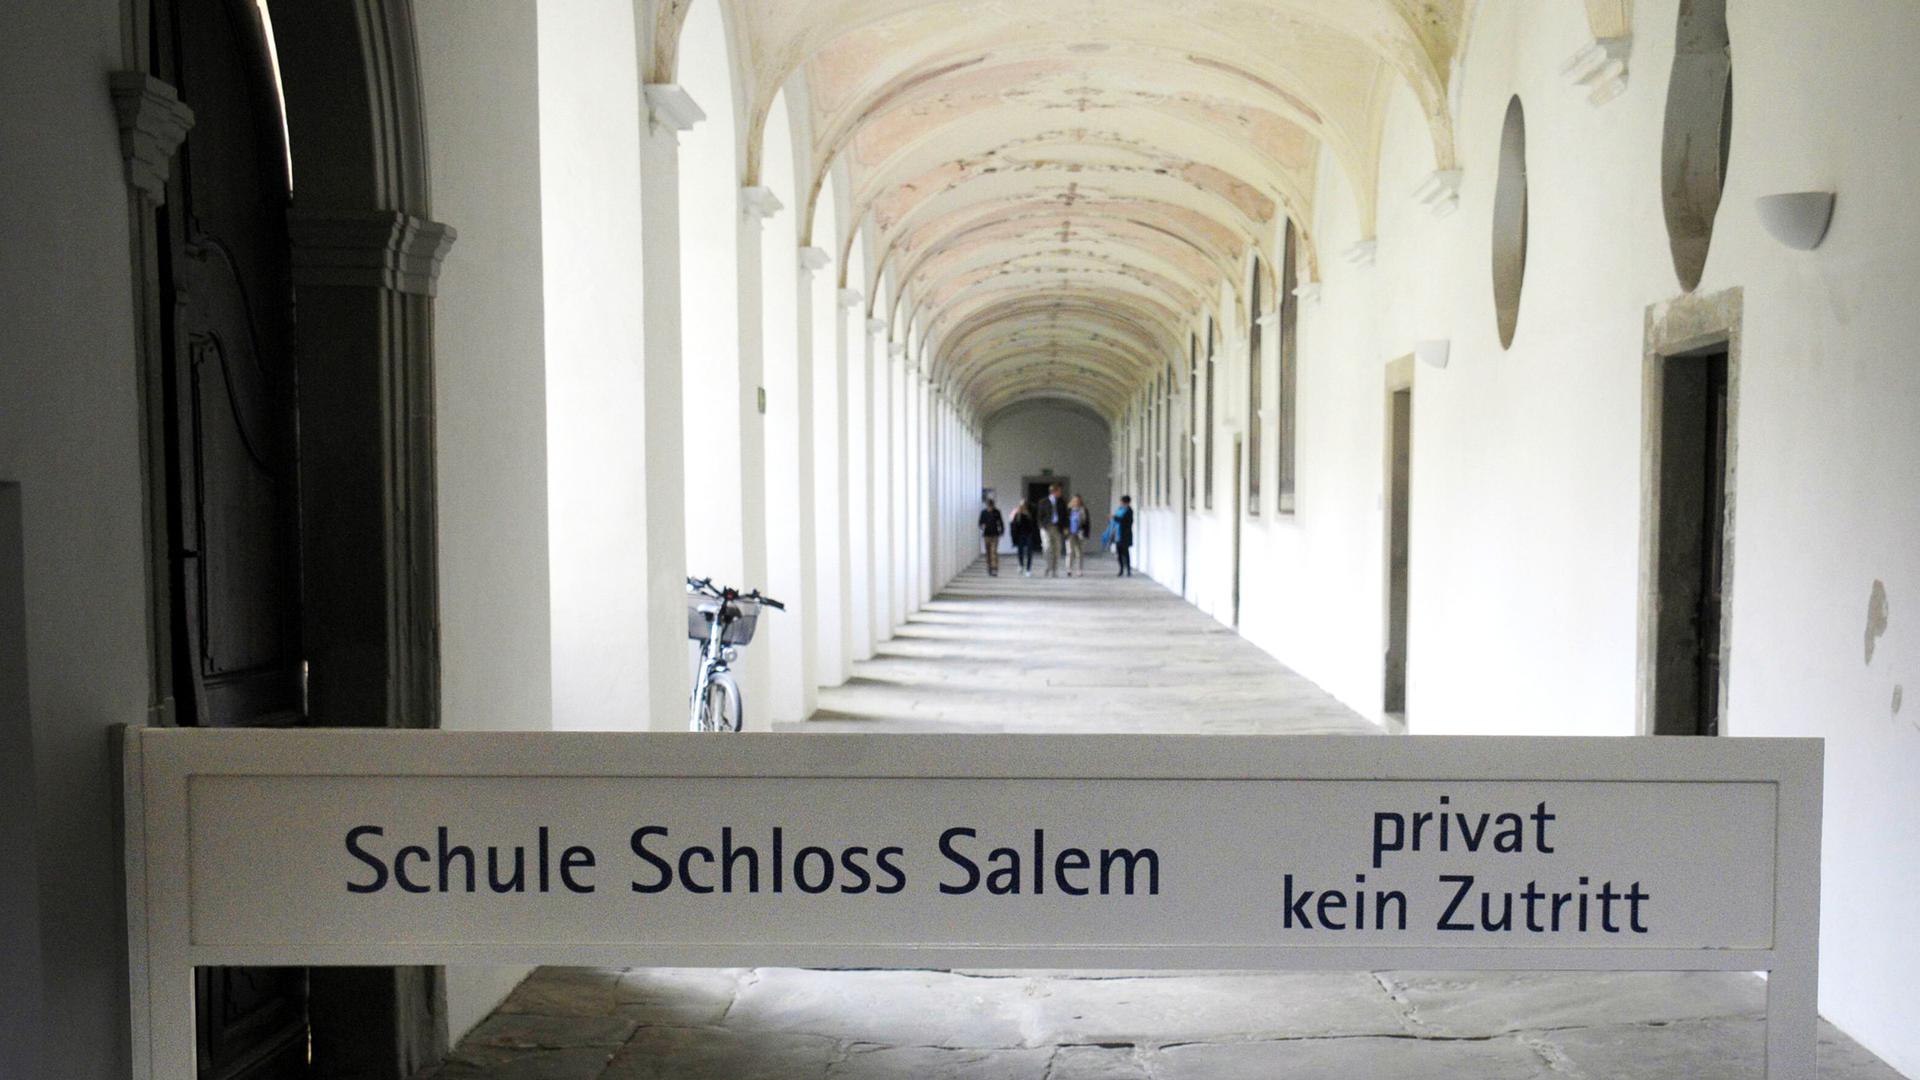 Die ehemalige Zisterzienserabtei Salem zählt zu den bedeutendsten Kulturdenkmäler der Bodenseeregion. 1920 richteten dort Prinz Max von Baden und Kurt Hahn das weltweit renommierte Internat "Schule Schloss Salem" ein.